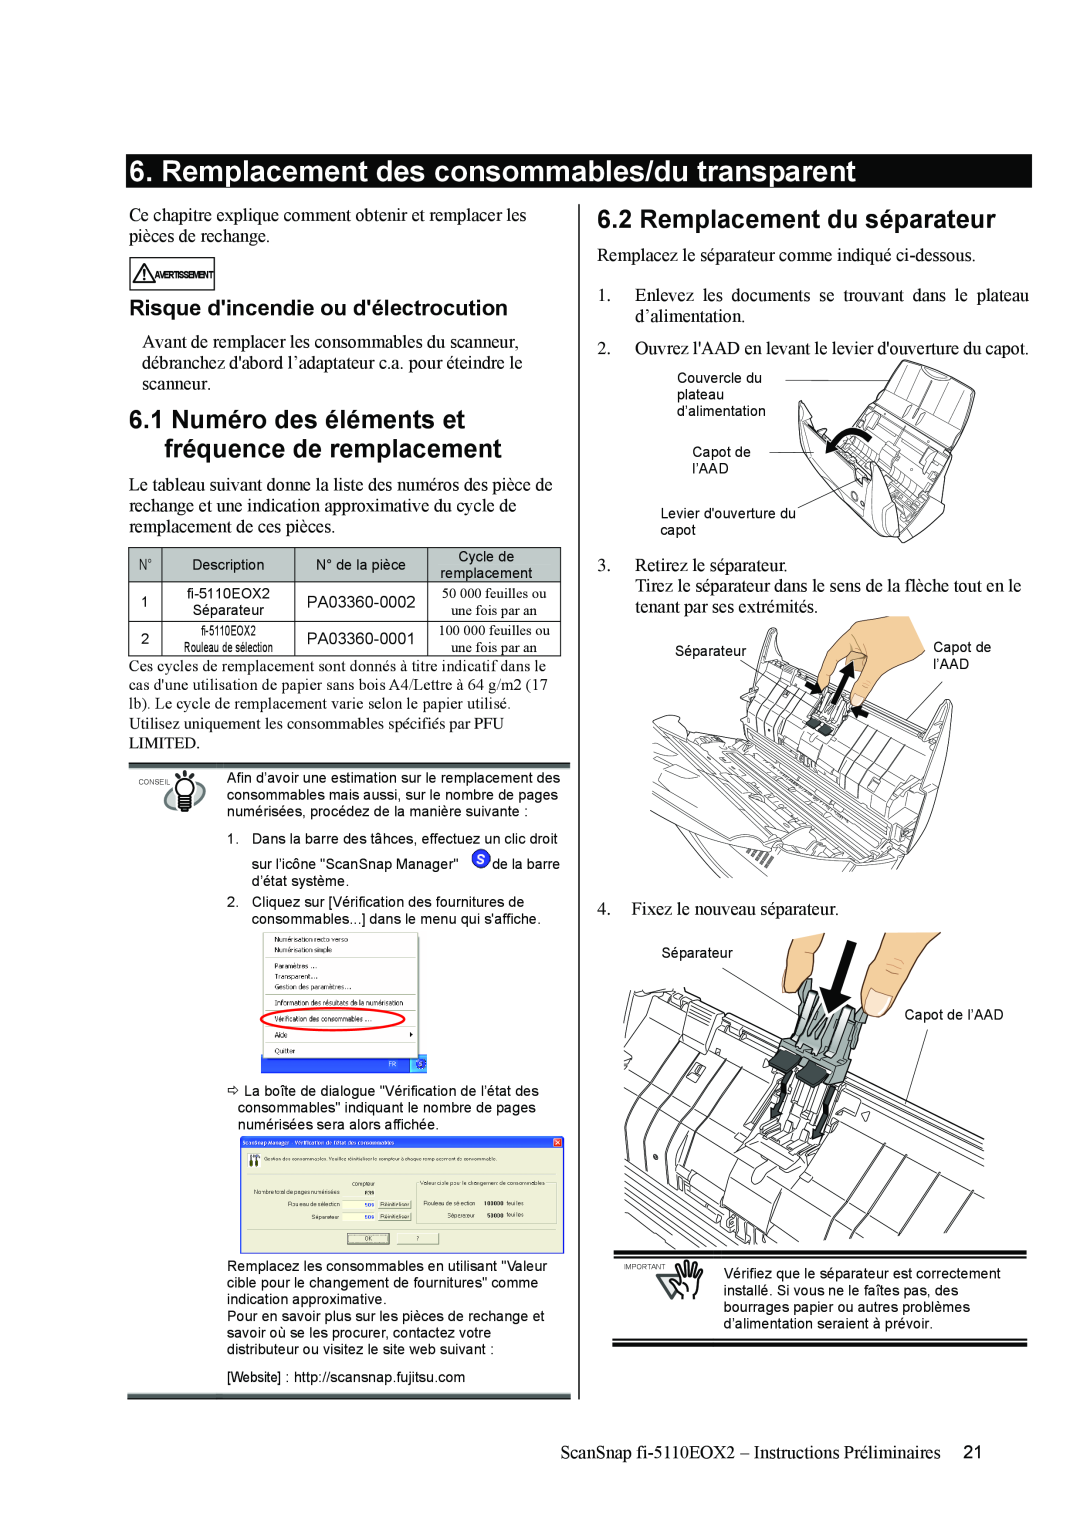 Fujitsu fi-5110EOX2 manual Remplacement des consommables/du transparent, Remplacement du séparateur 